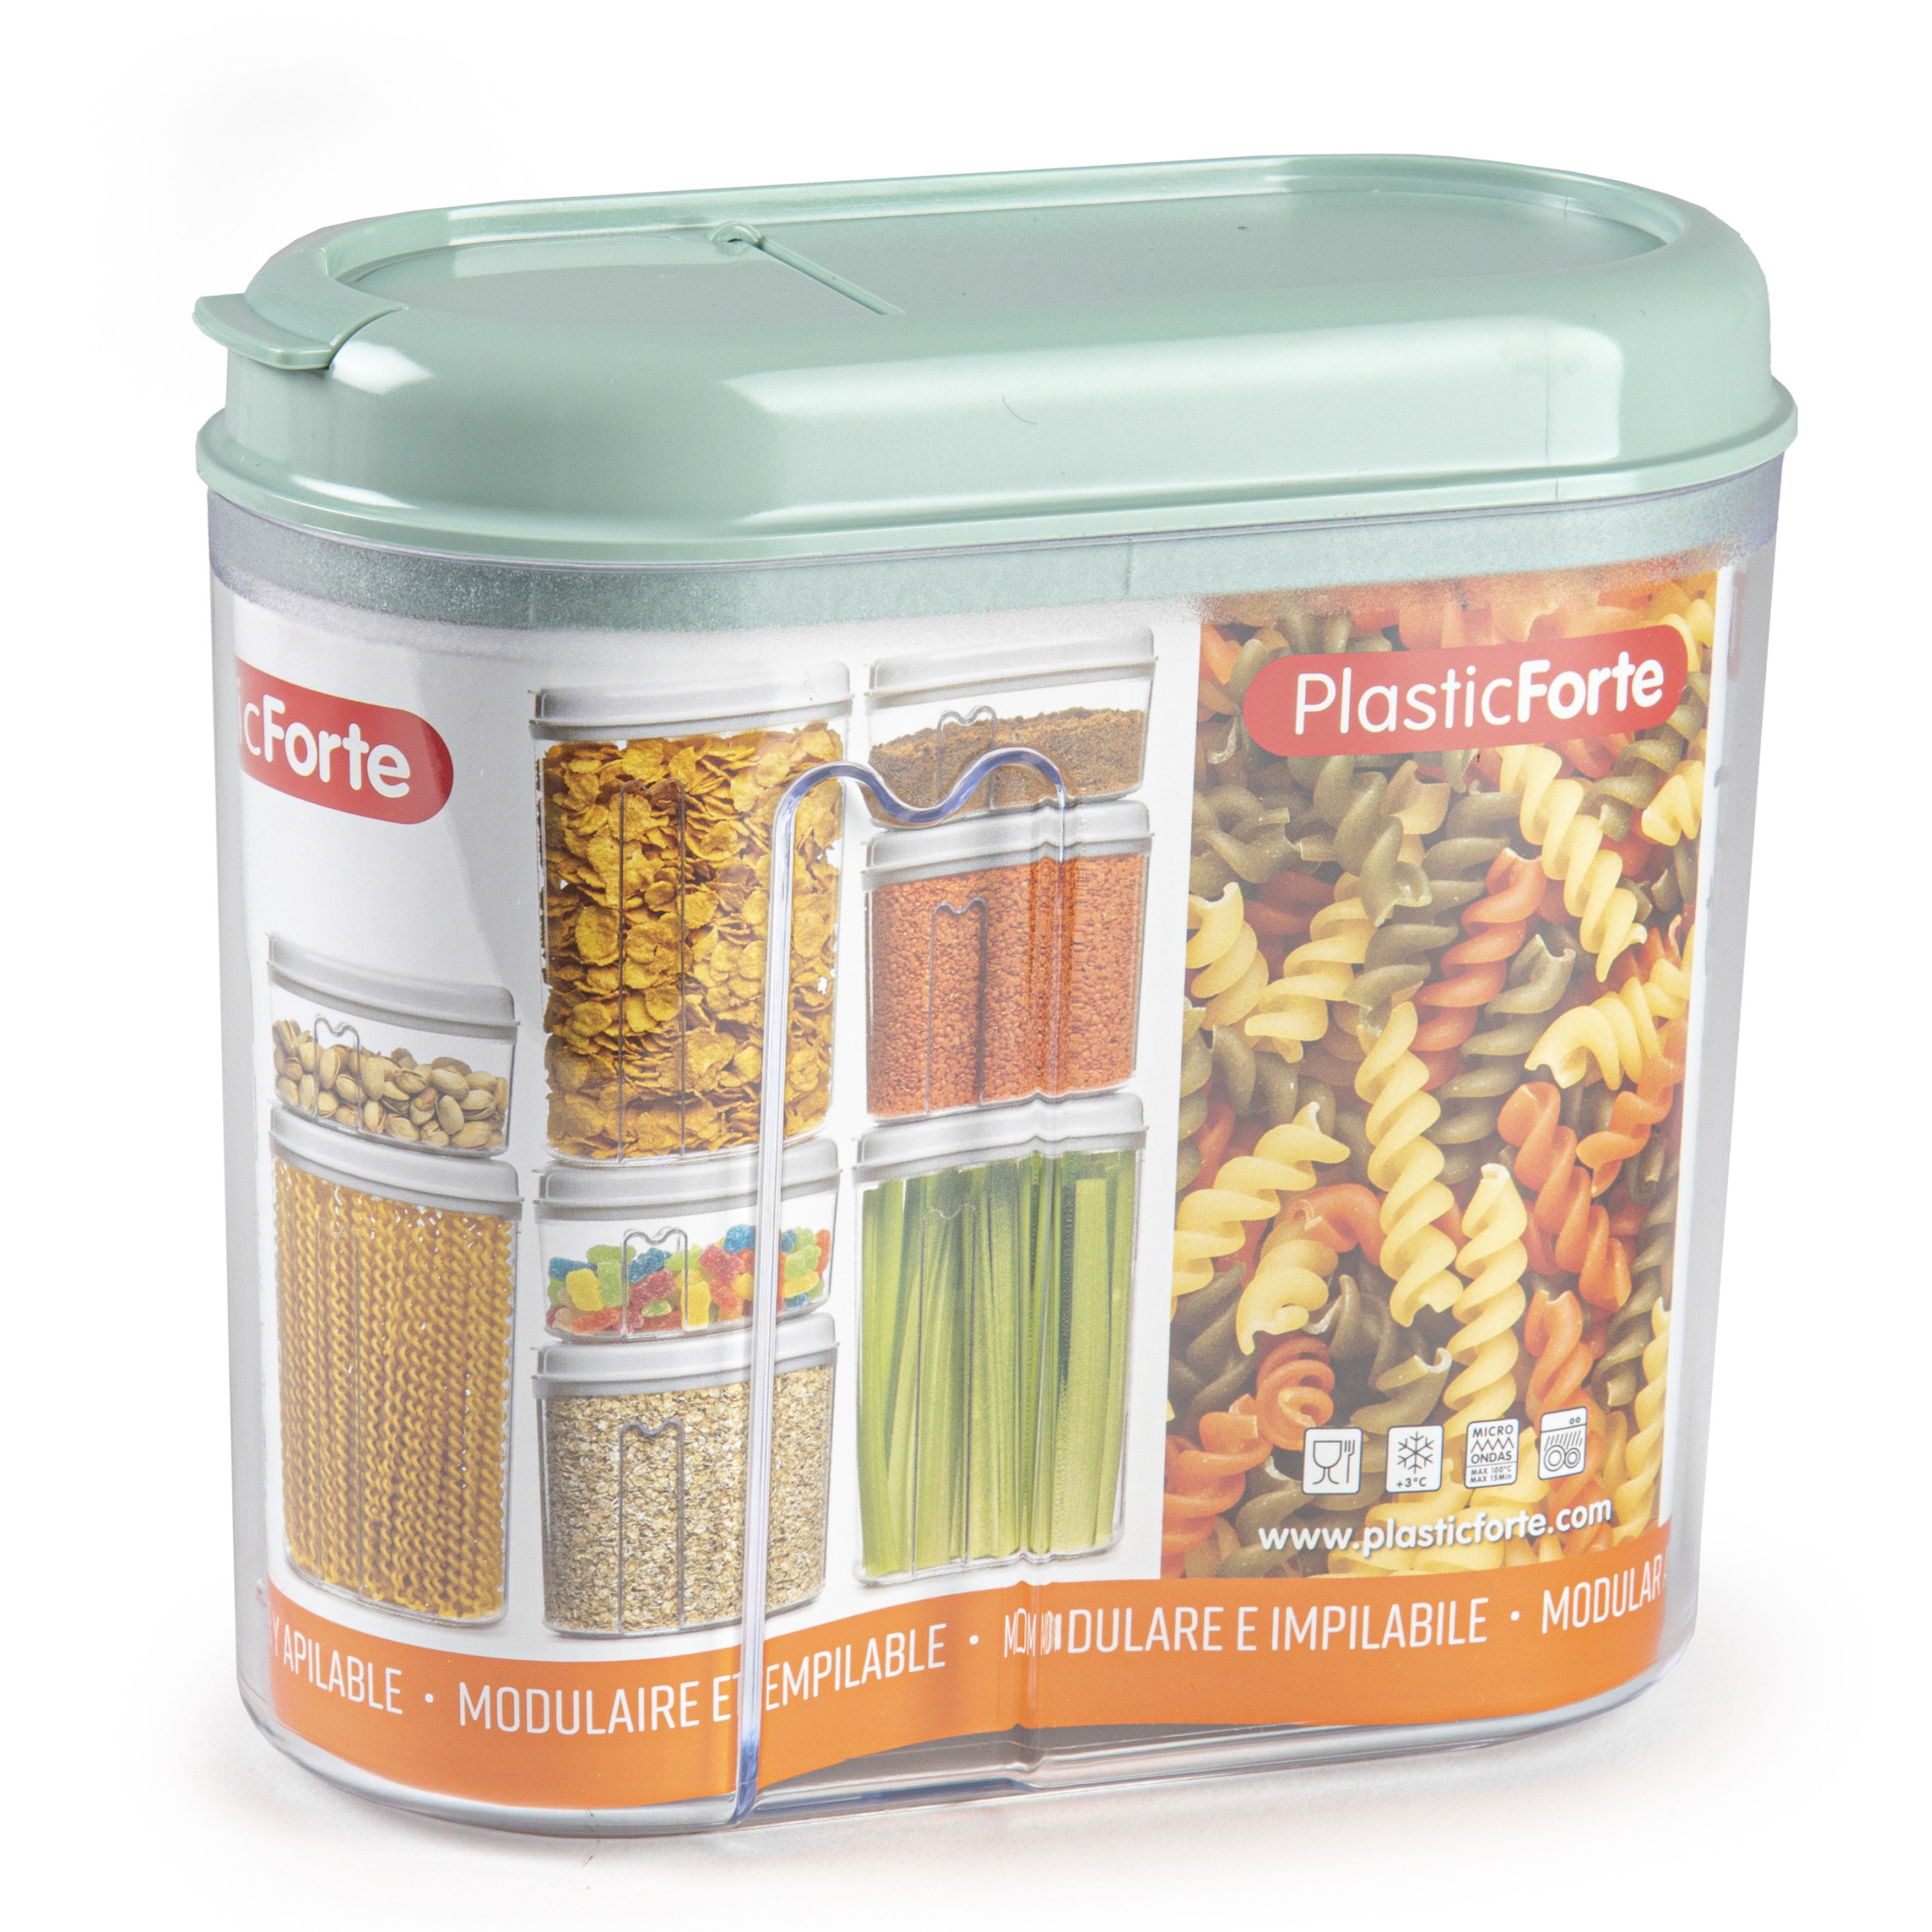 PlasticForte Voedselcontainer strooibus - mintgroen - 1000 ml - kunststof - 15 x 8 x 14 cm - voorraadpot -